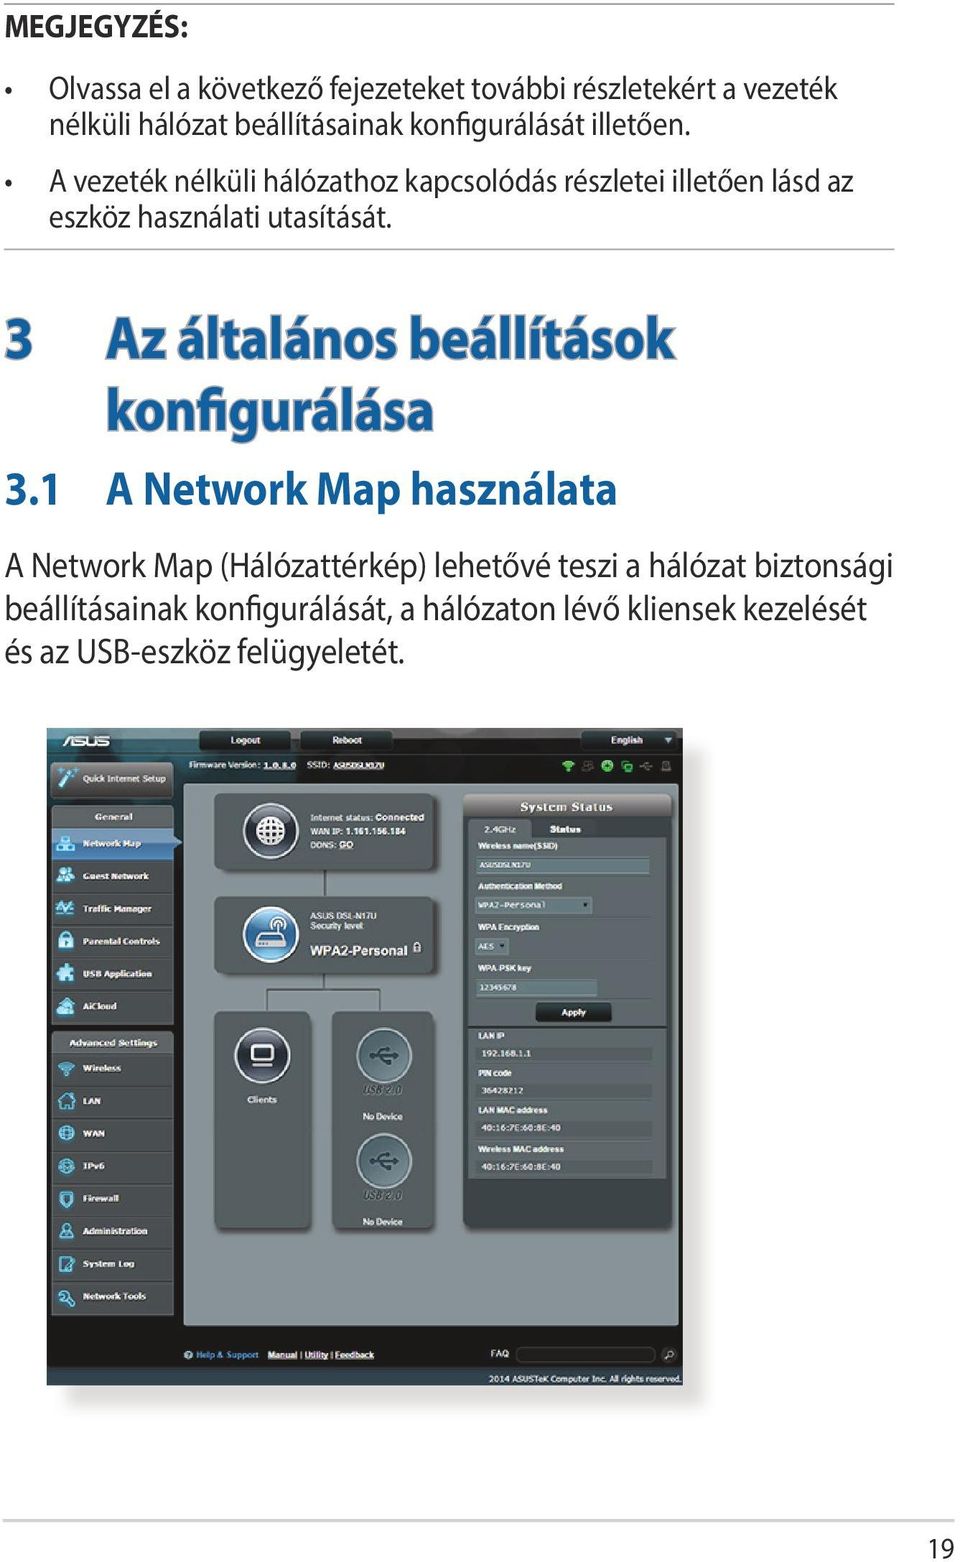 A vezeték nélküli hálózathoz kapcsolódás részletei illetően lásd az eszköz használati utasítását.